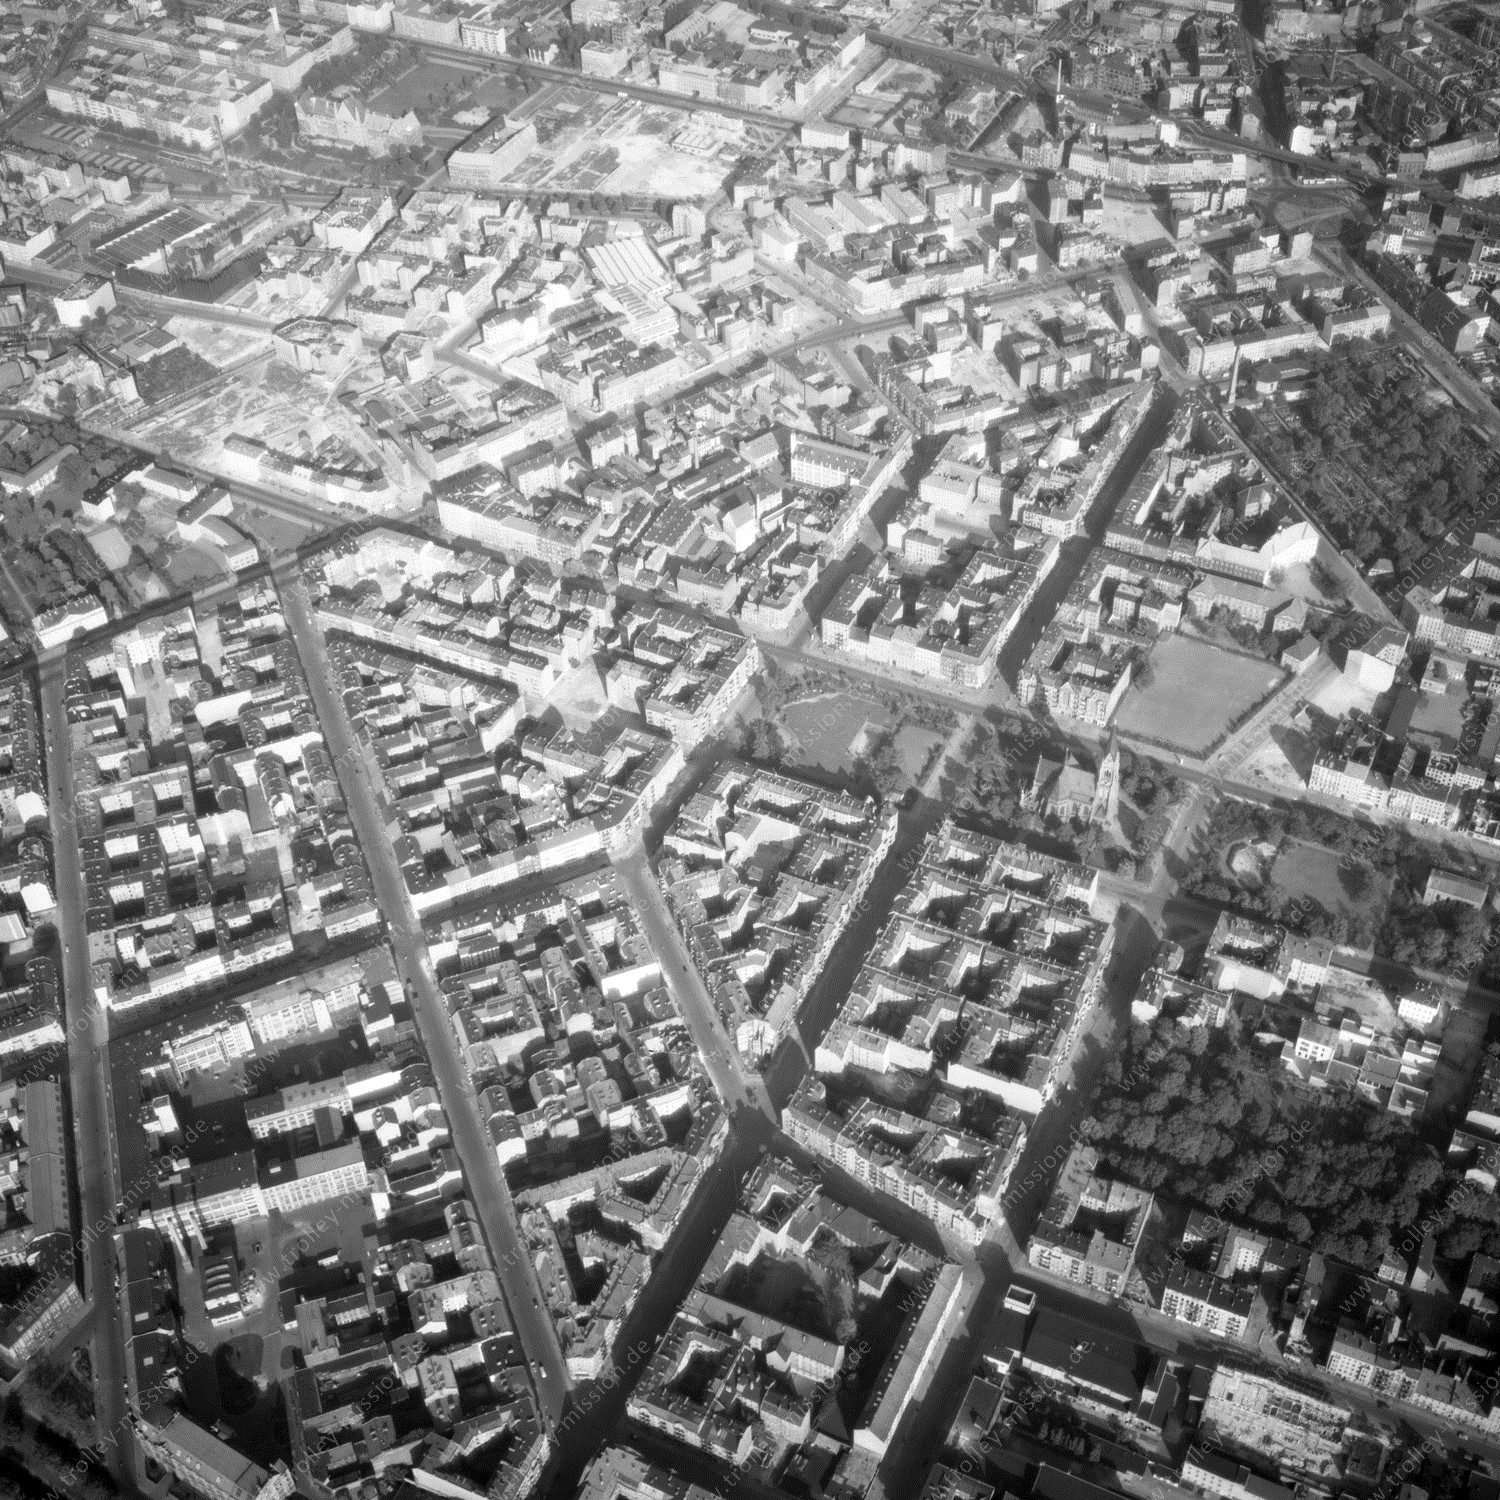 Alte Fotos und Luftbilder von Berlin - Luftbildaufnahme Nr. 11 - Historische Luftaufnahmen von West-Berlin aus dem Jahr 1954 - Flugstrecke Papa